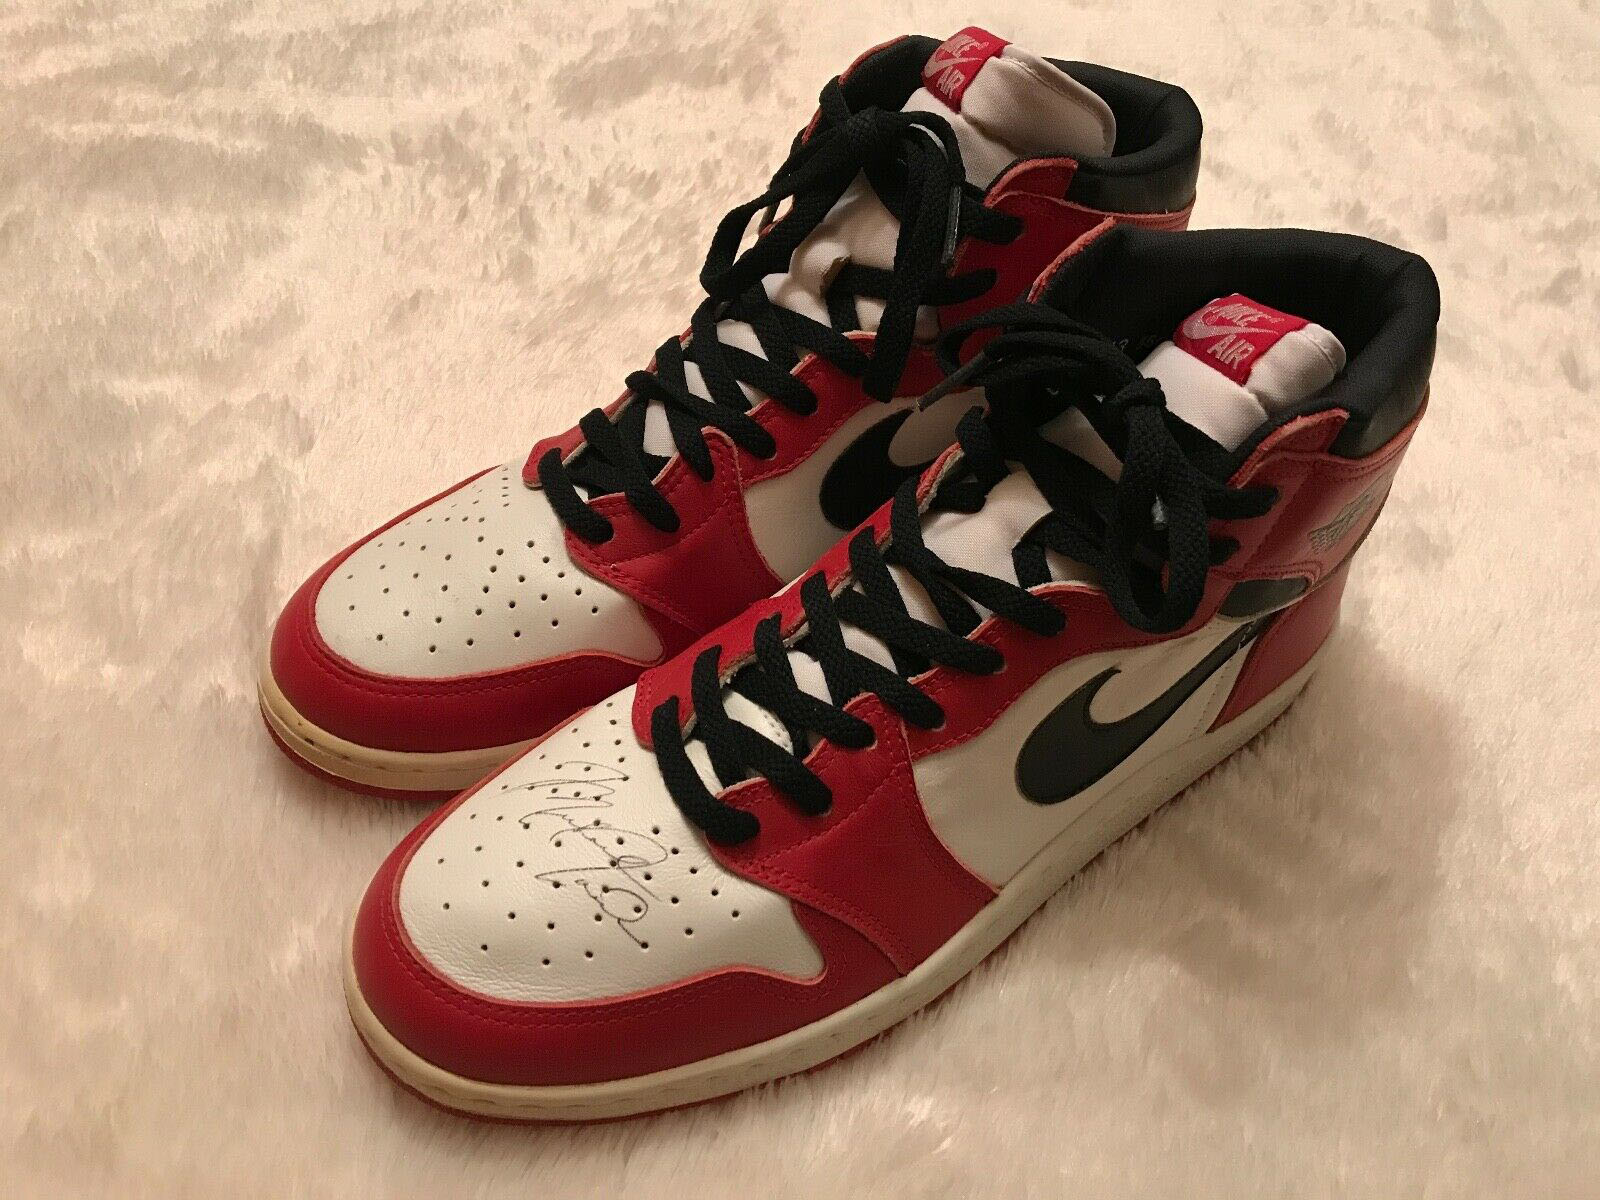 Michael Jordan-Signed Air Jordan 1s Are for $1 Million on